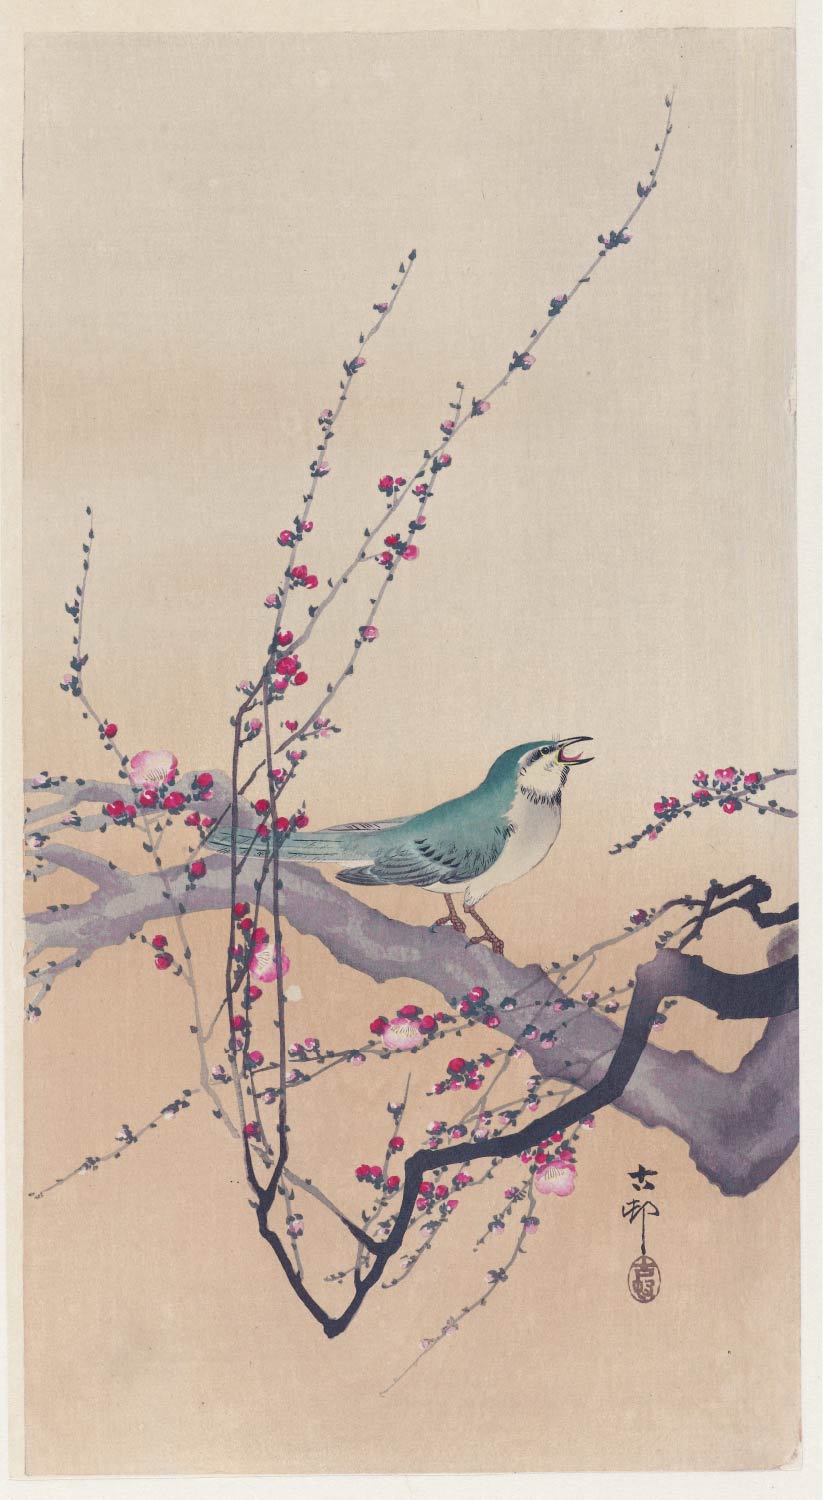 【無料壁紙】小原 古邨「梅に鴬 (1900-1936)」 / Ohara Koson_Songbird and plum blossom (1900-1936)